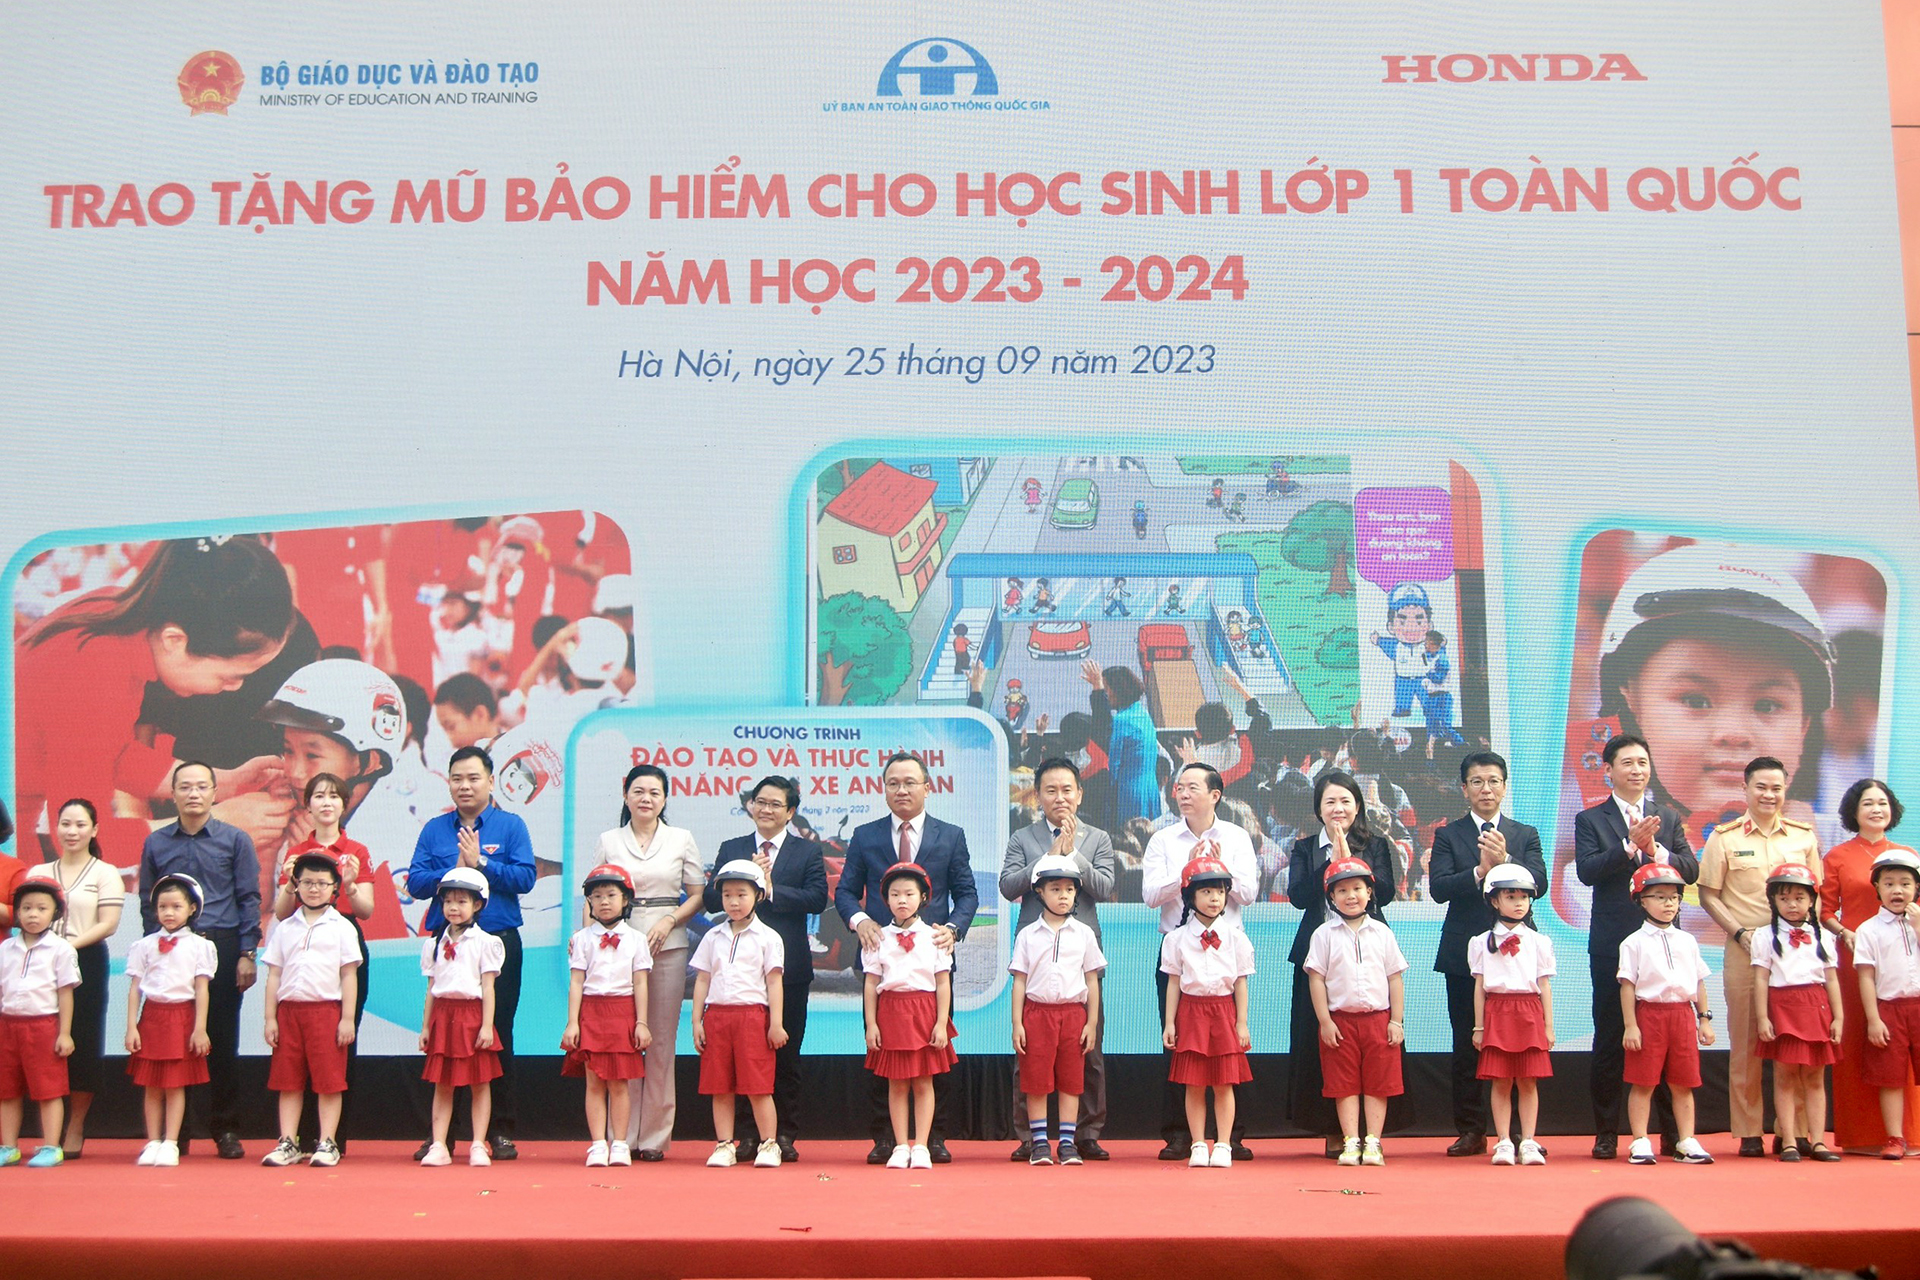 Các đại biểu trao tặng mũ bảo hiểm cho các em học sinh lớp Một trường Tiểu học Phú Đô, Hà Nội hồi tháng 9/2023.